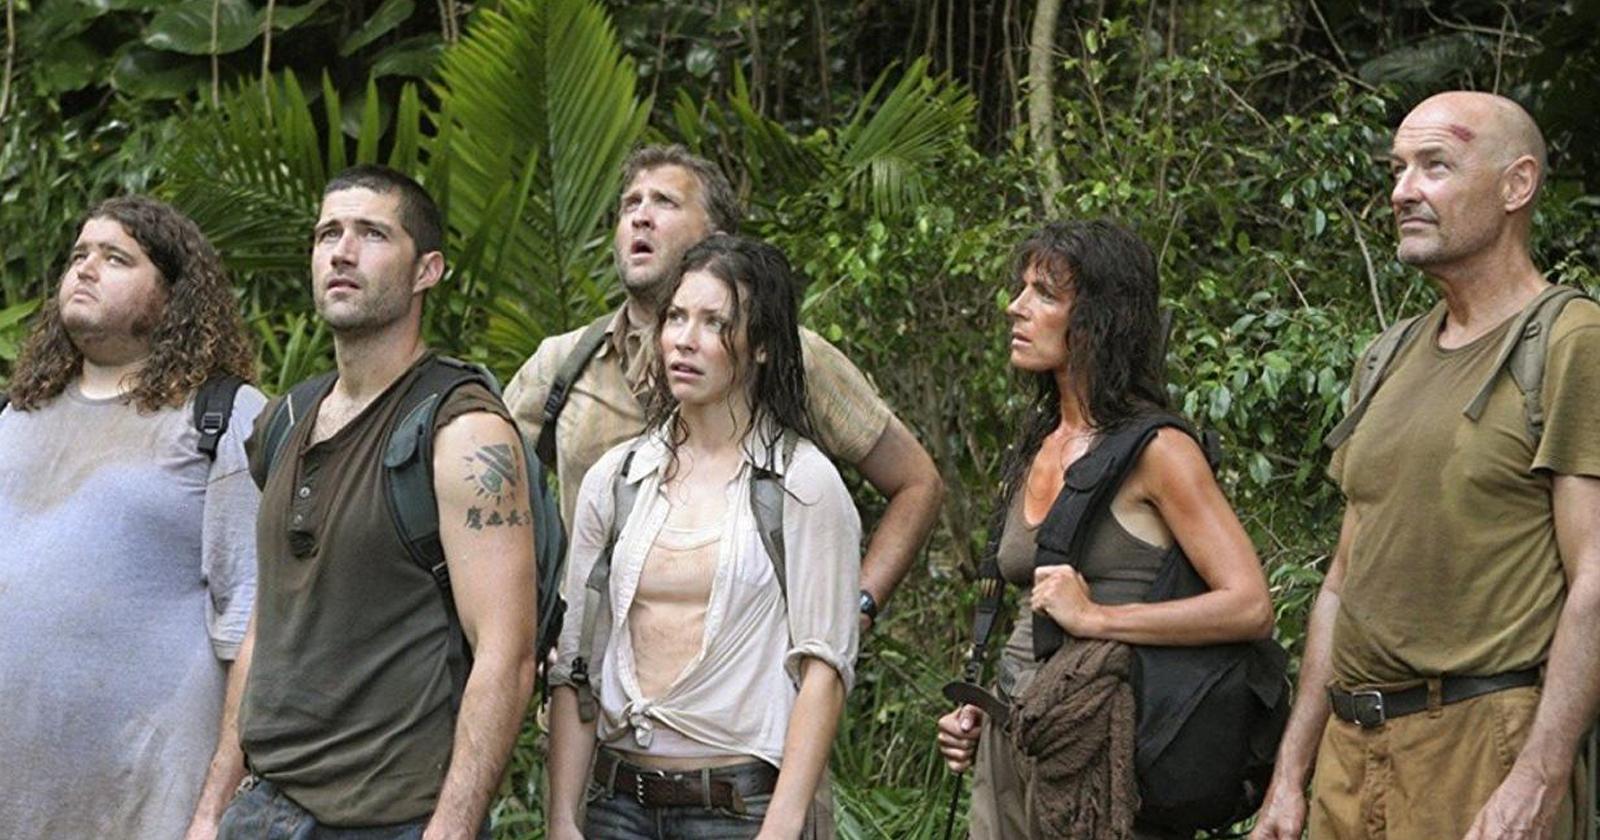 Algunos de los personajes clave de la serie Lost, transpirados y sucios en una isla con vegetación tropical.